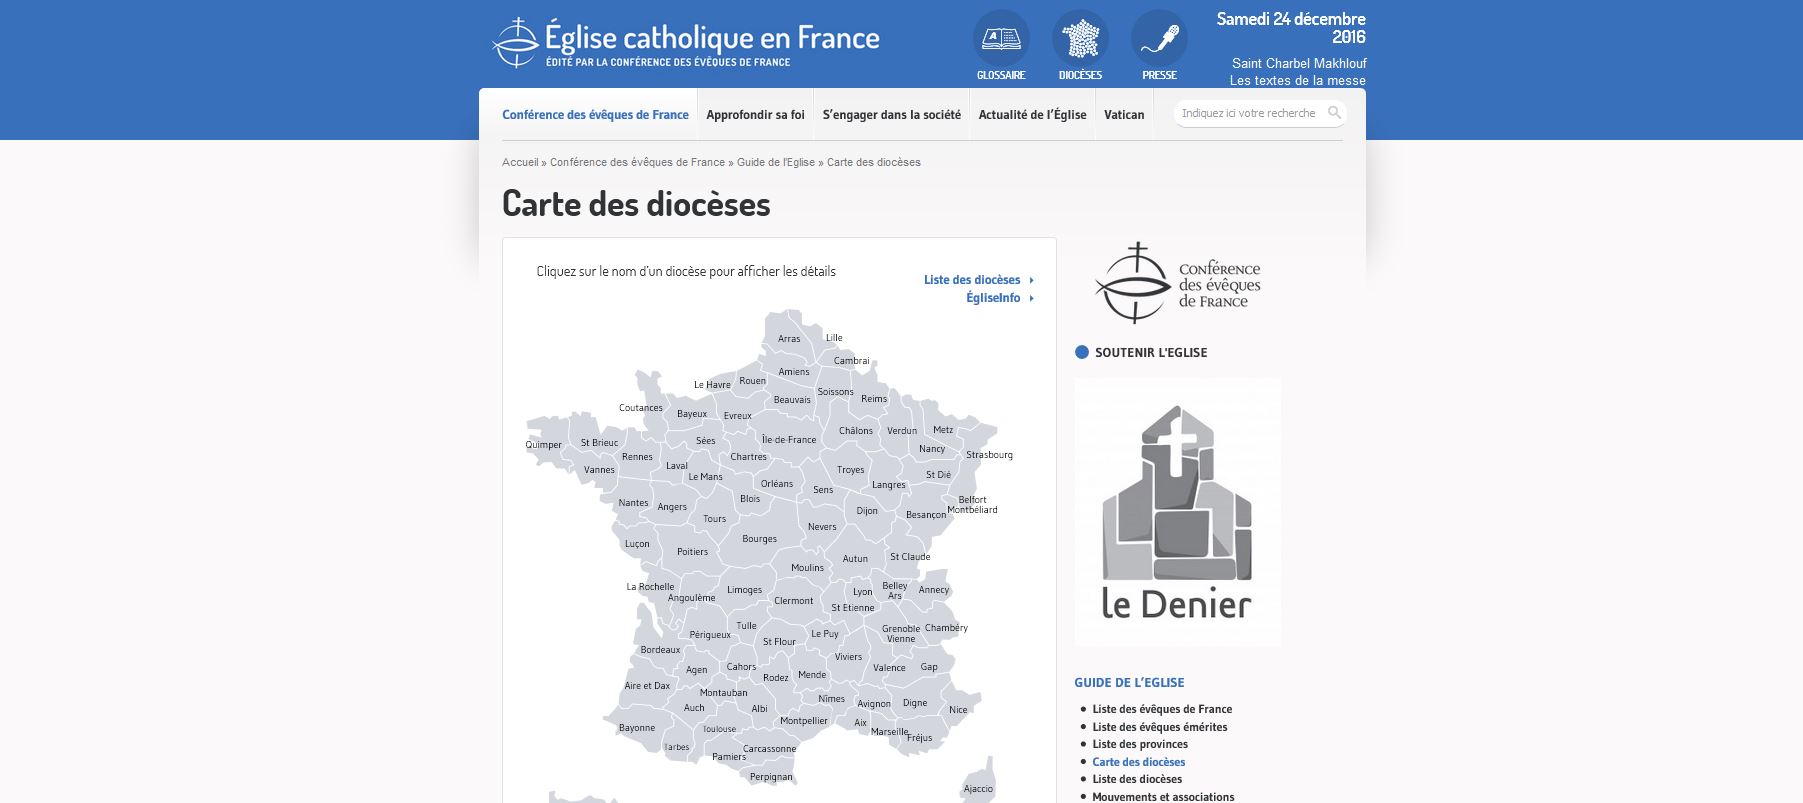 La CEF n'hébergera plus les sites internet des diocèses (www. eglise.catholique.fr)